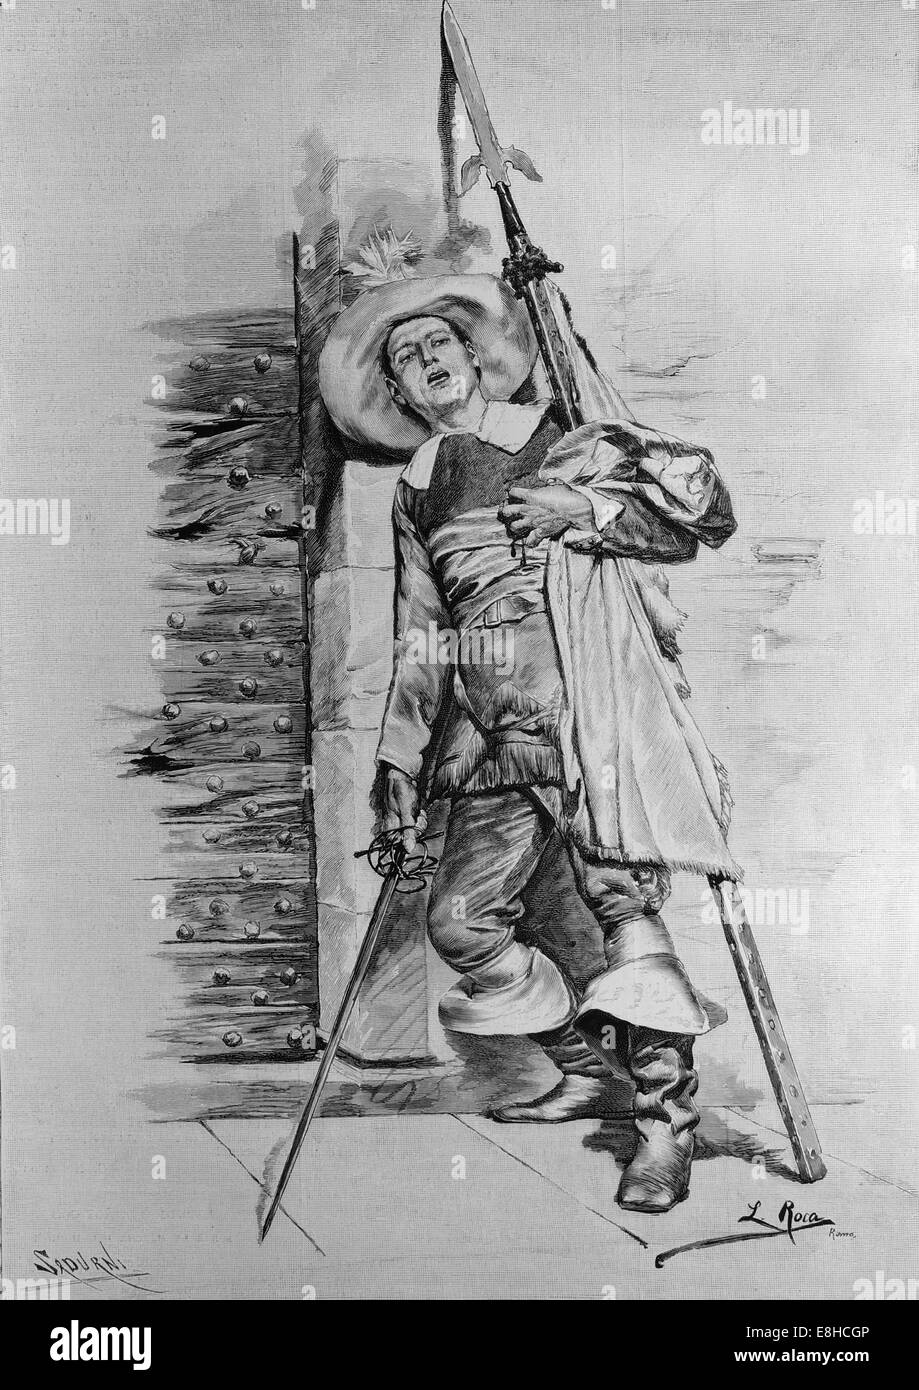 Patriottico. Soldato. Disegno di L. Roca. Incisione di Sardurni. Illustrazione artistica, pubblicato in spagnolo, 1885. Foto Stock